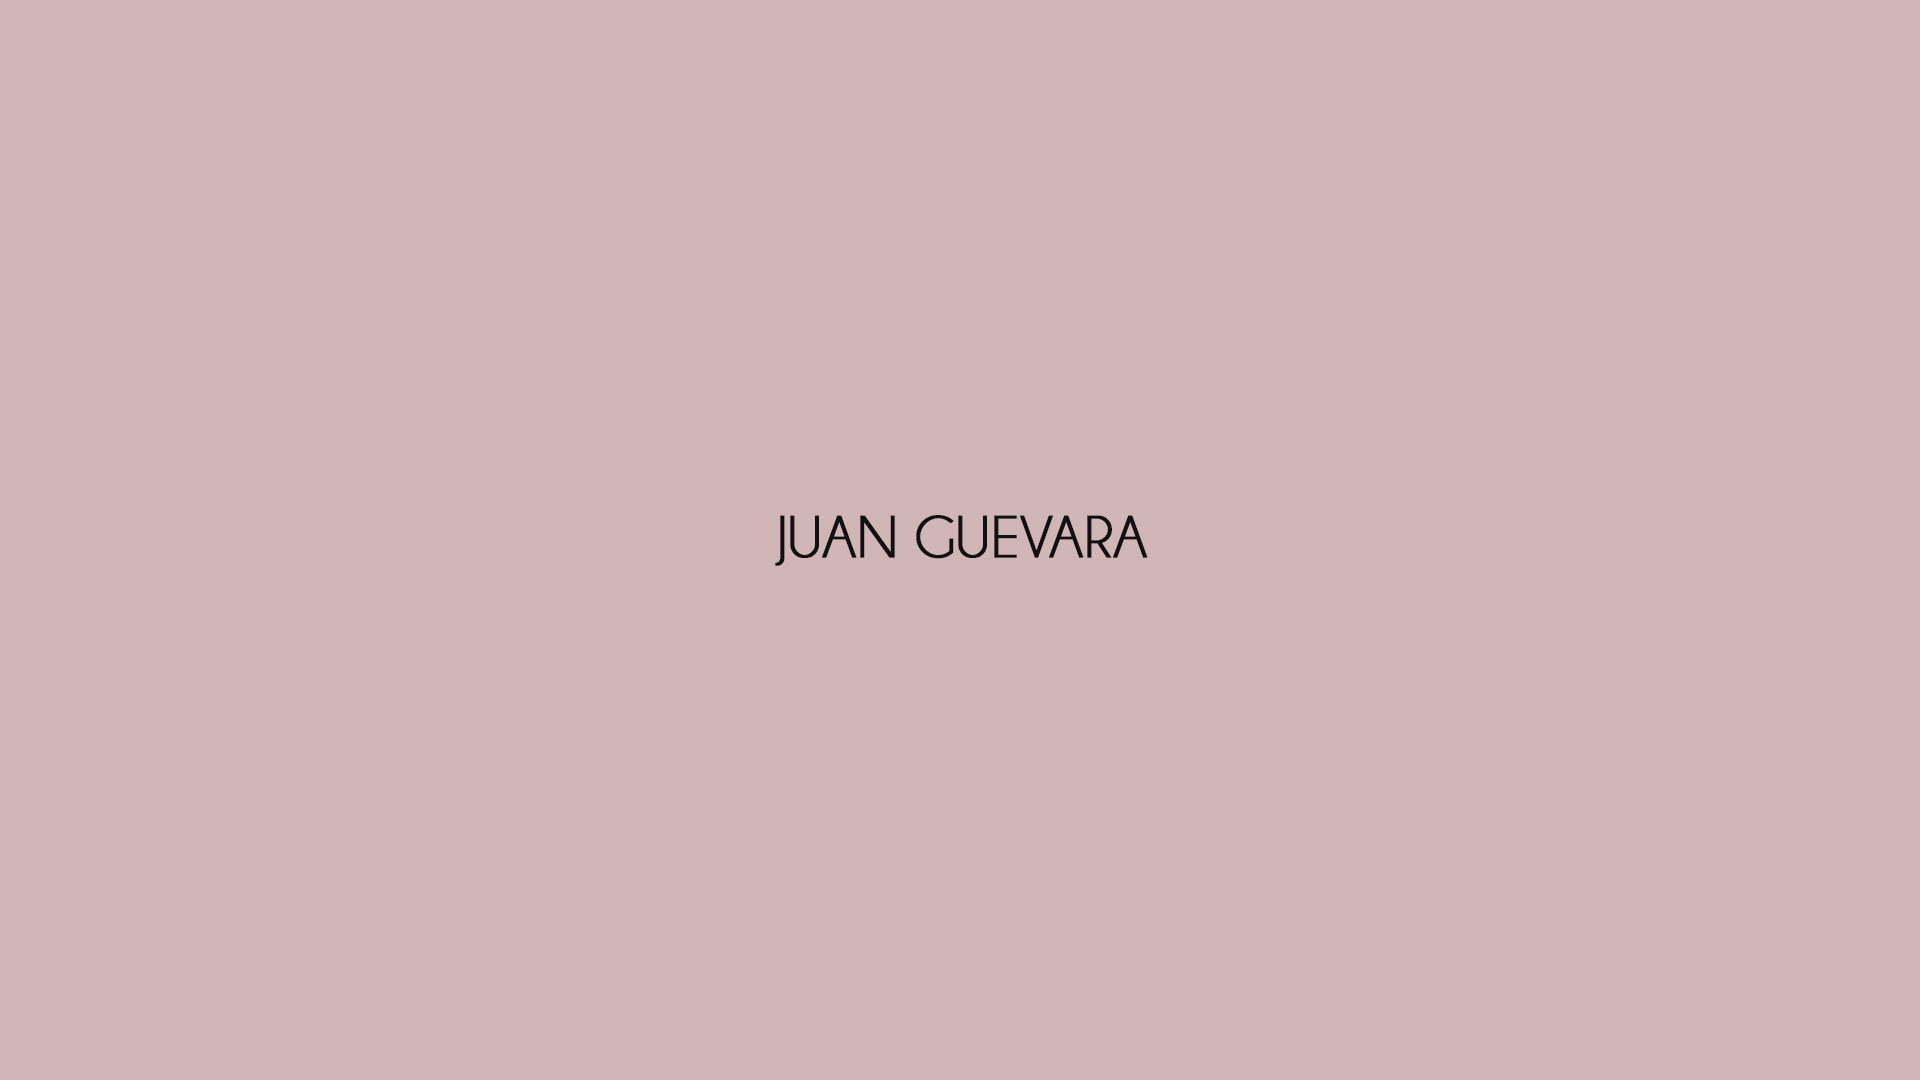 Juan Guevara